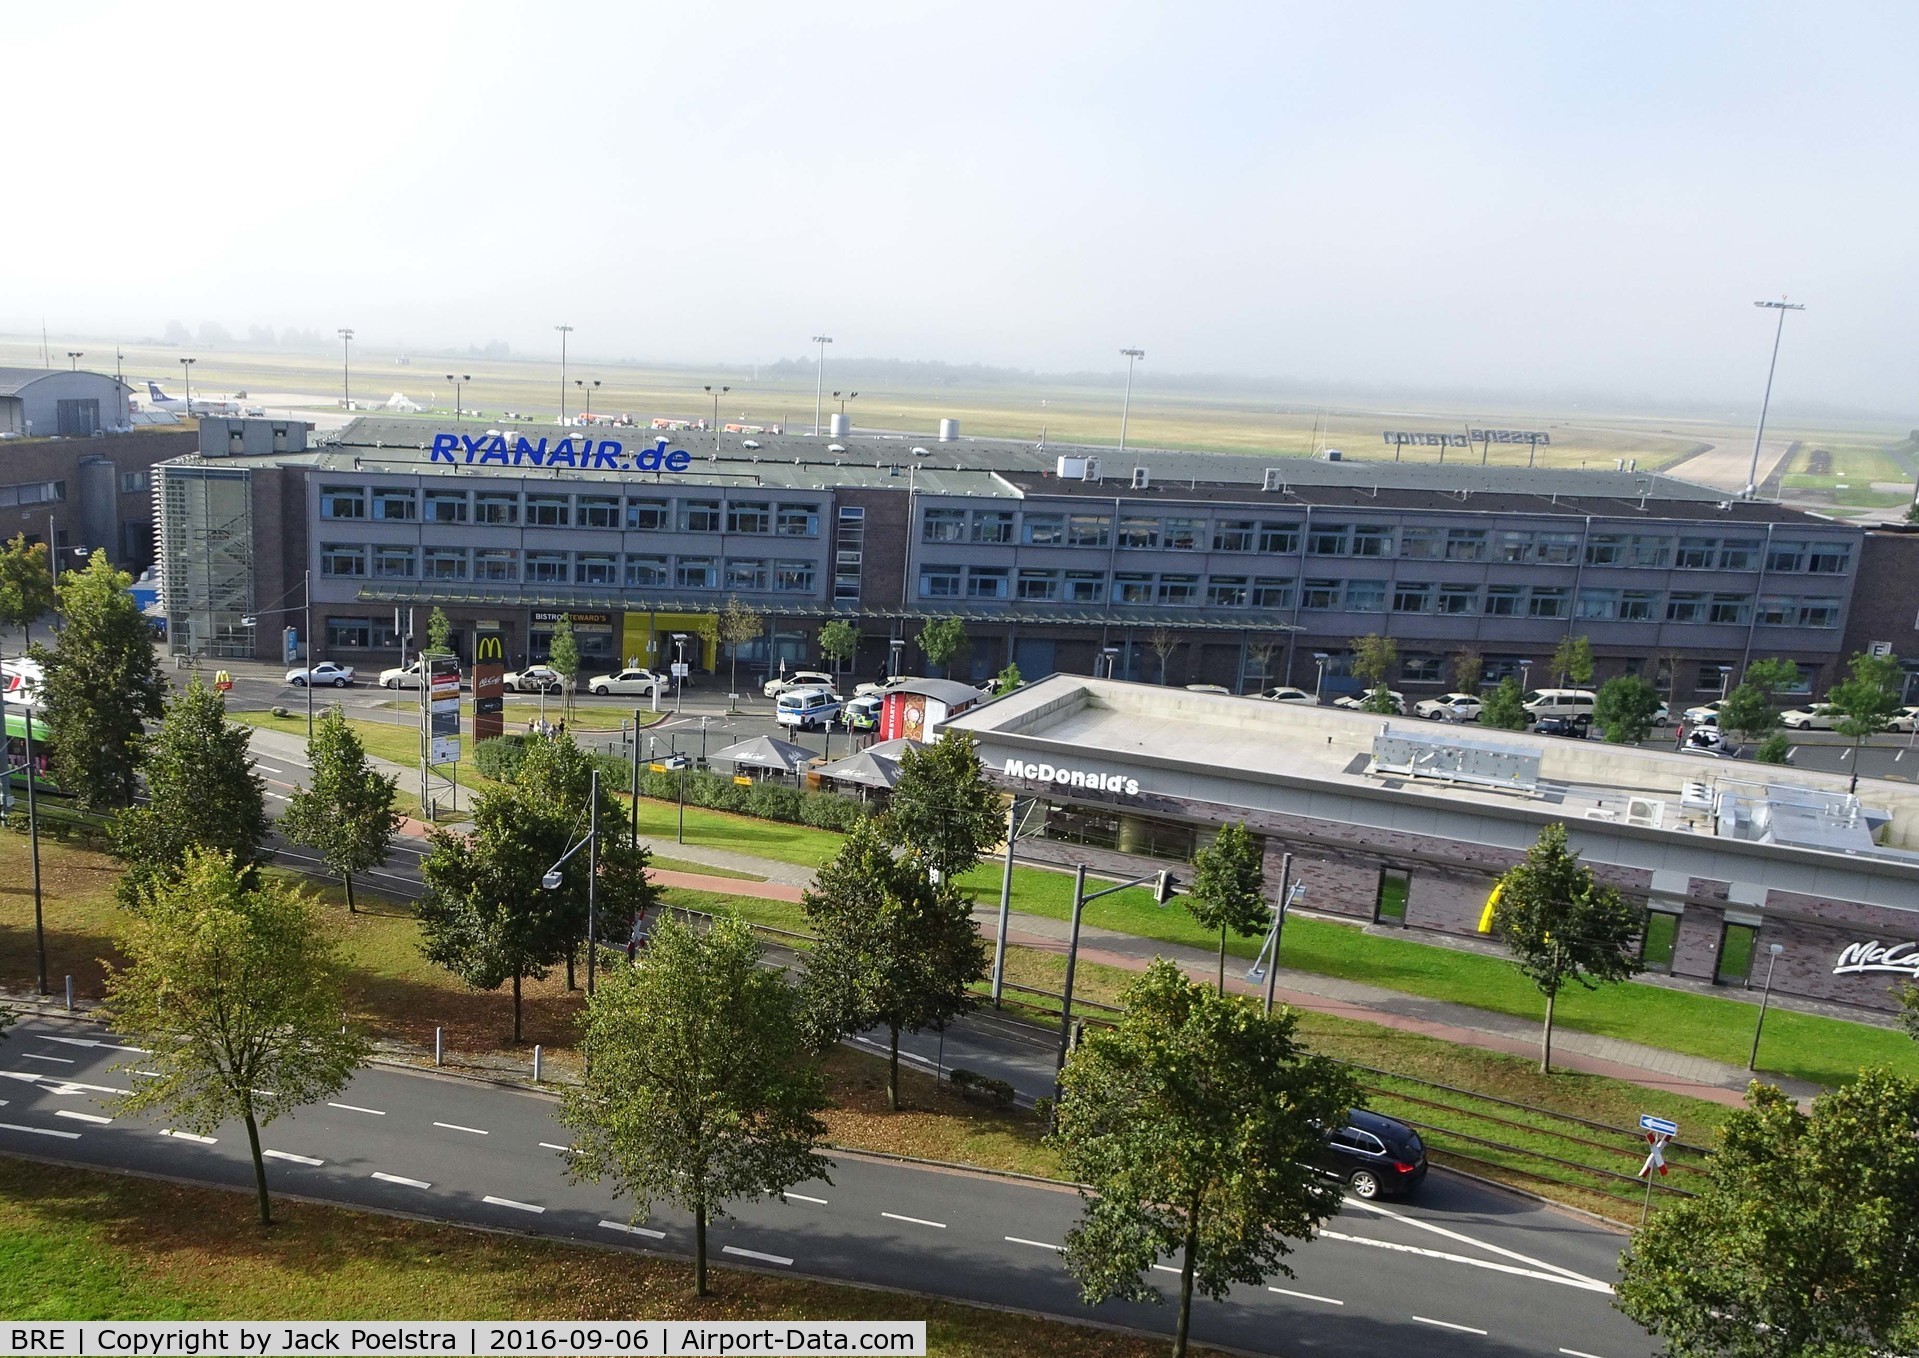 Bremen Airport, Bremen Germany (BRE) - Ryanair terminal at Bremen airport